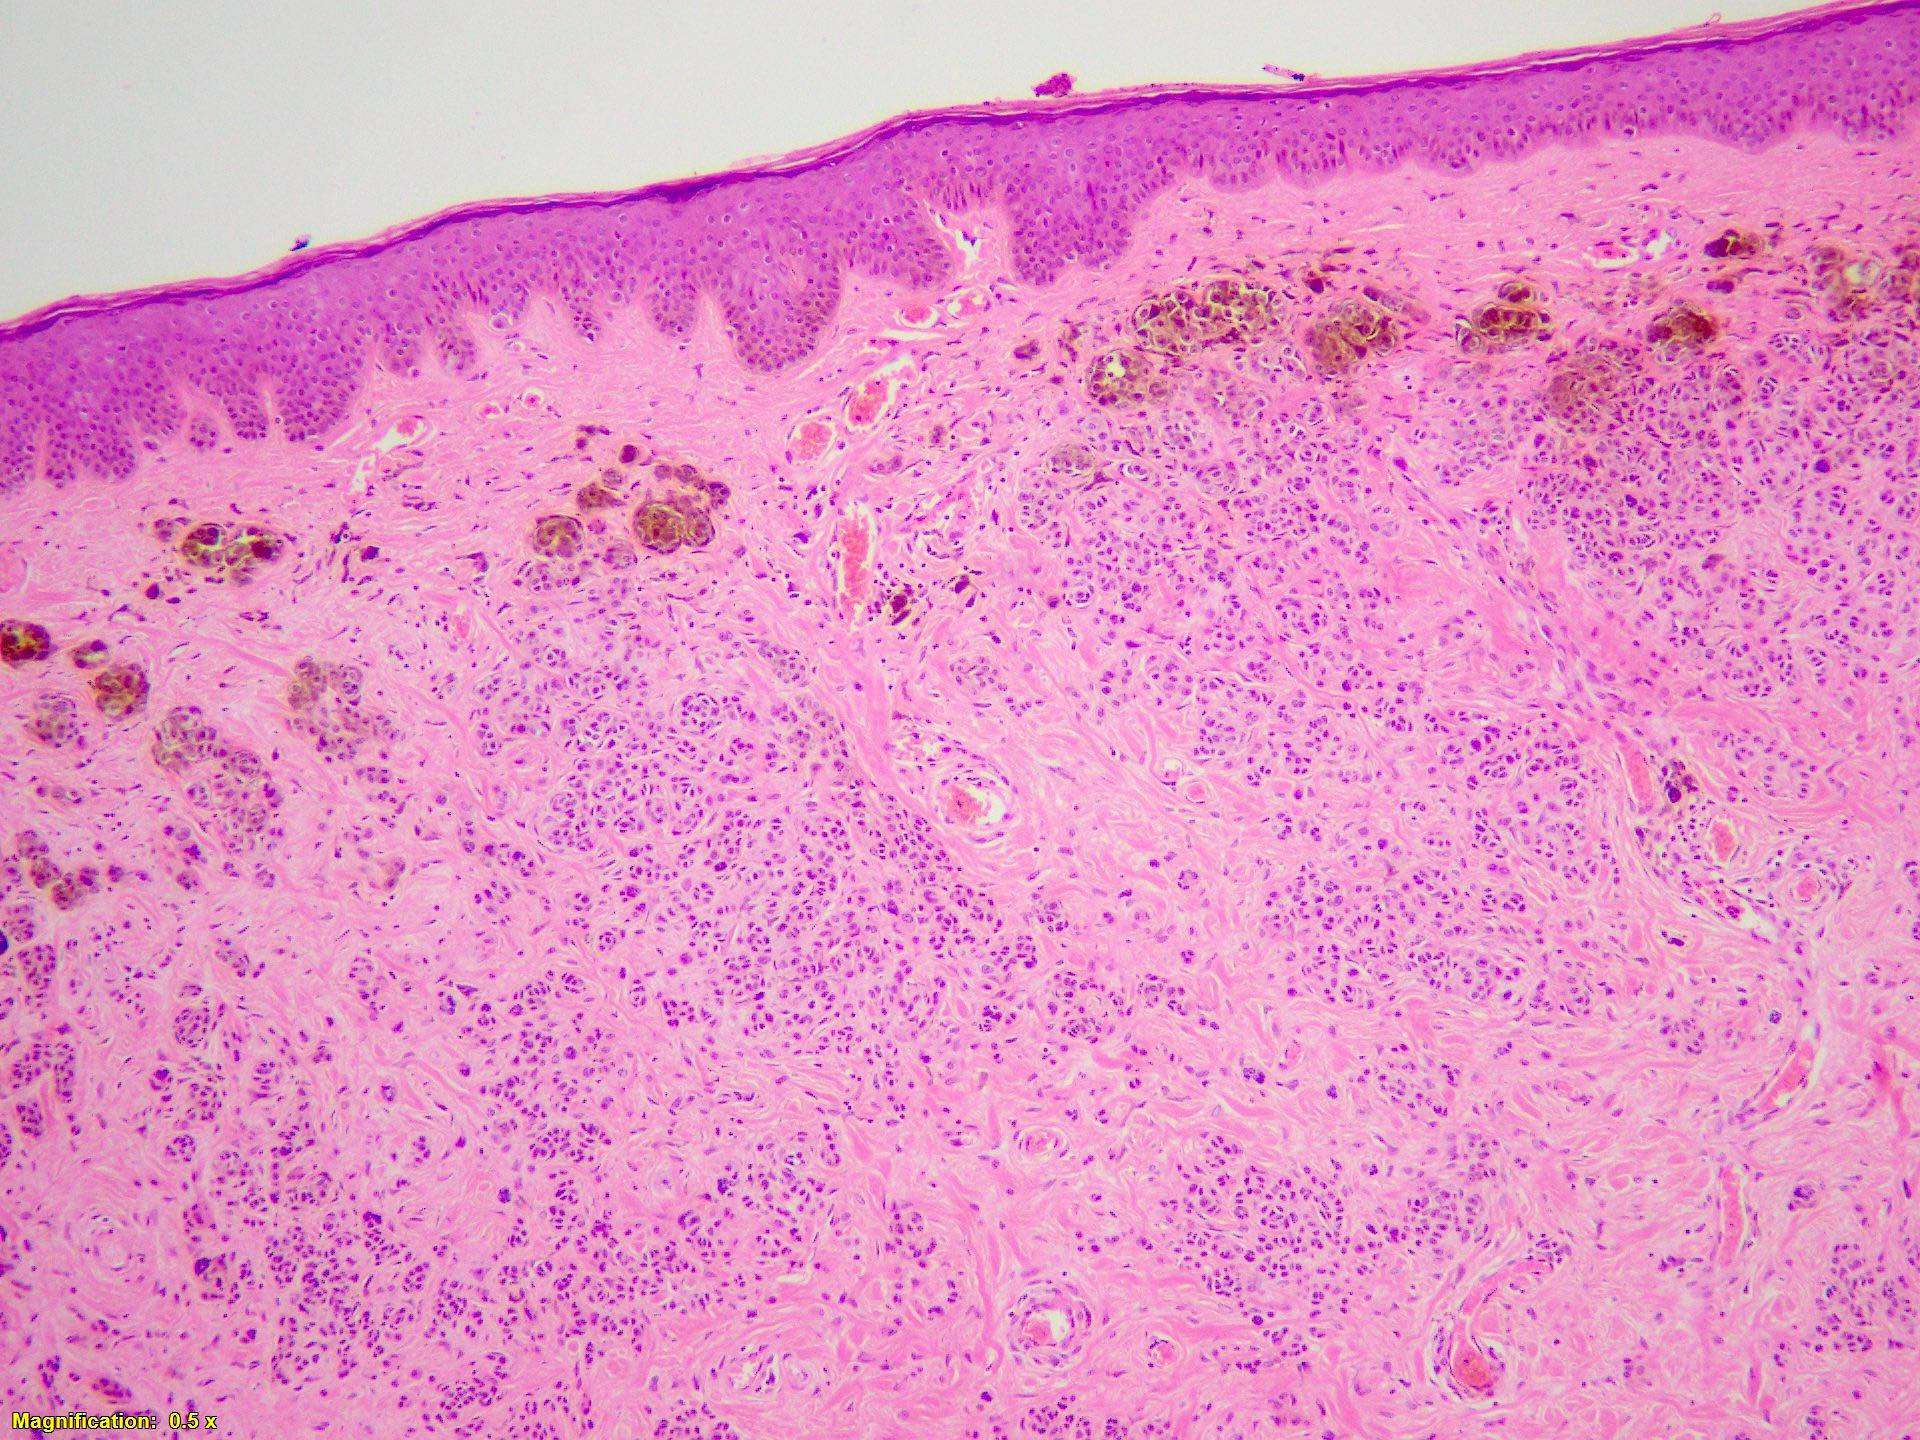 Dermal melanocytic proliferation